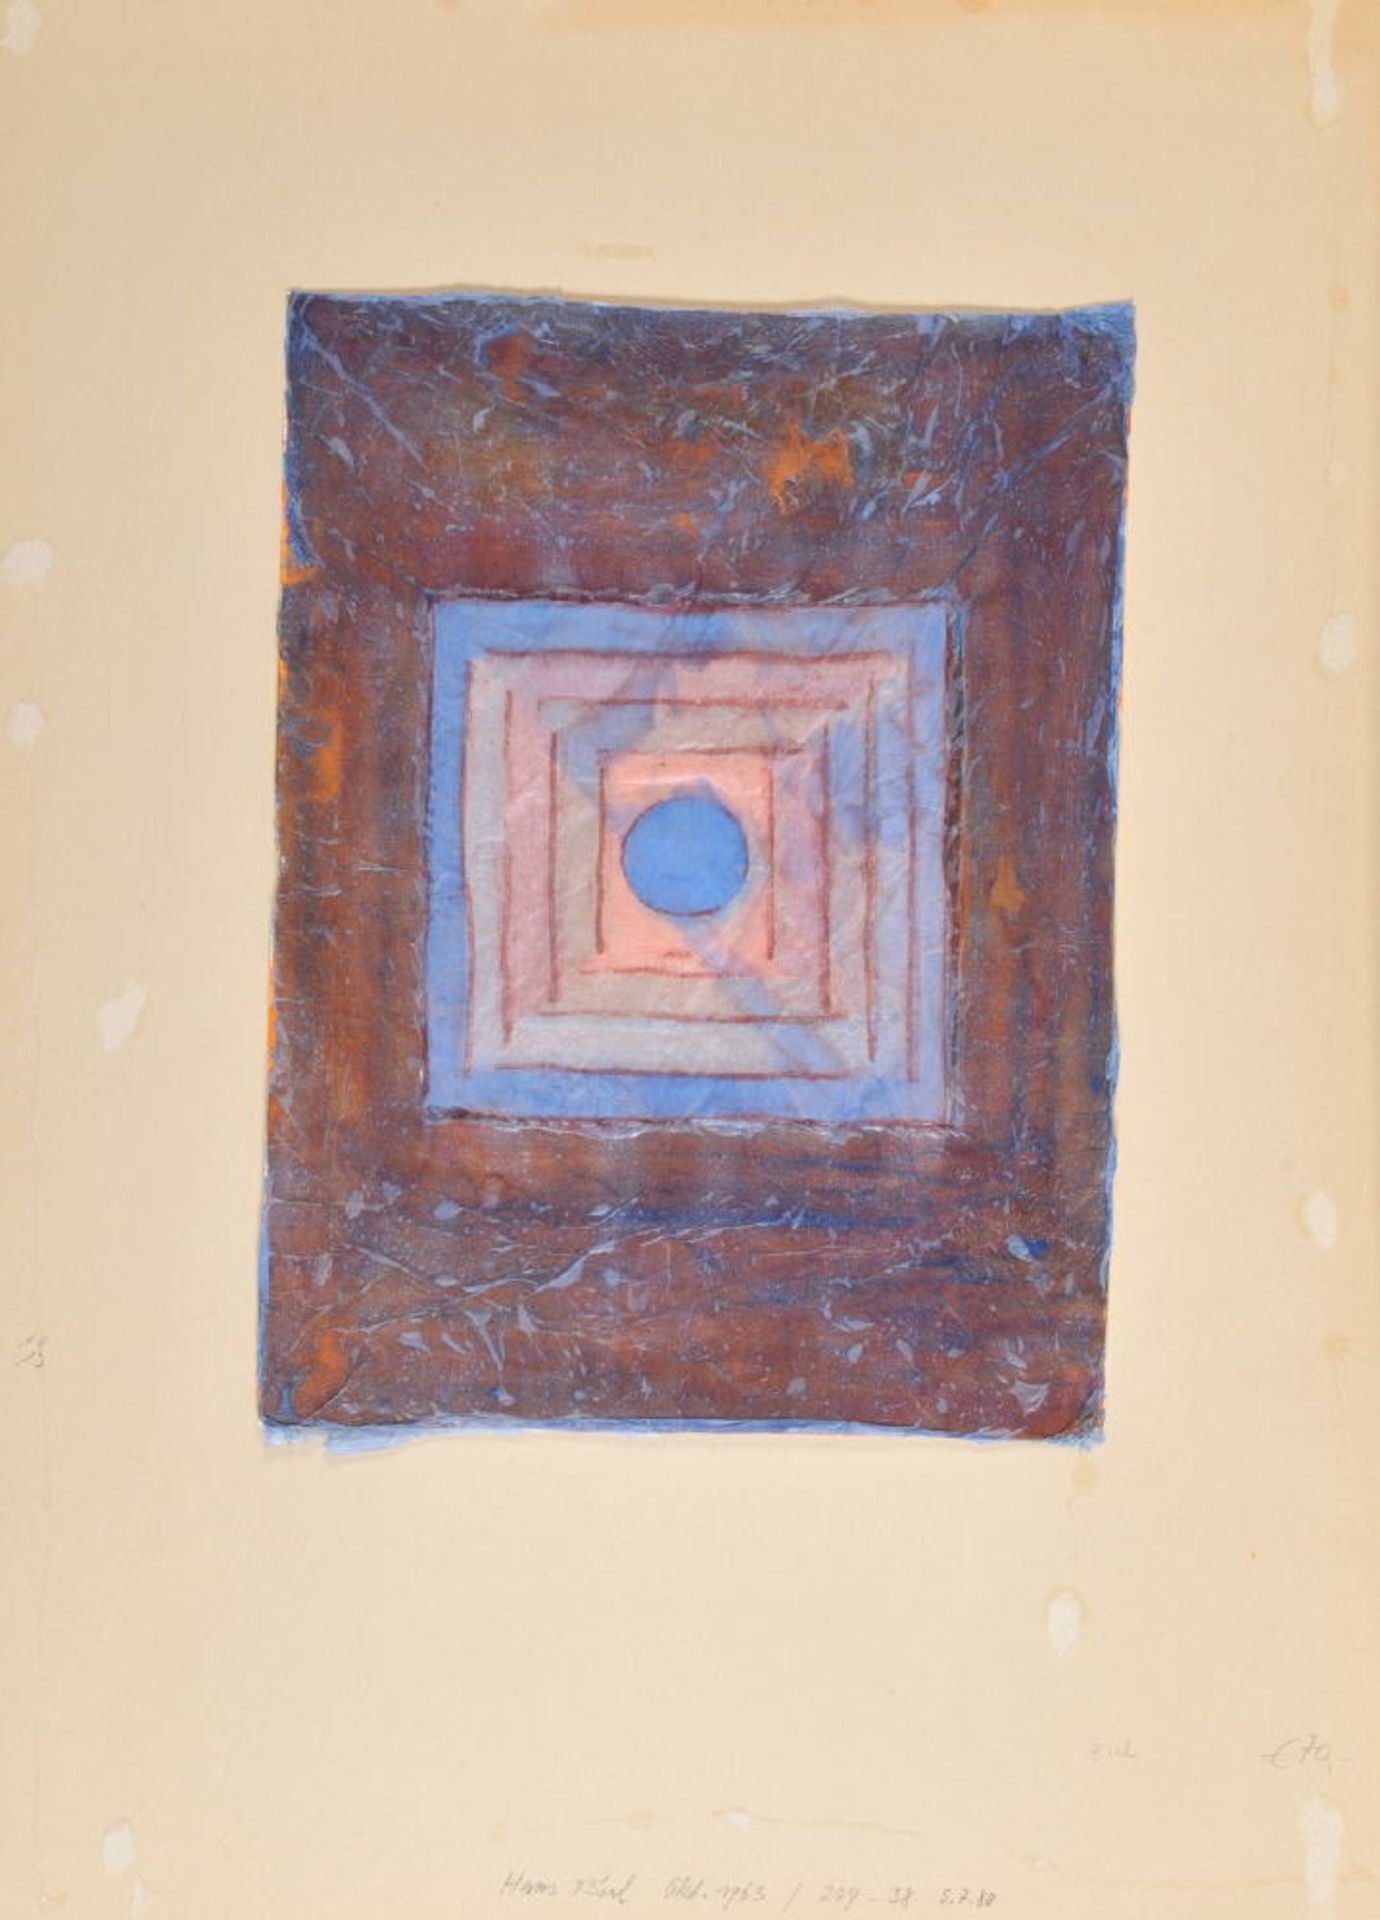 Biel, Hans, Künstler des 20. Jh.Aquarell-Mischtechnik, 40 x 30 cm, " Ohne Titel ", auf